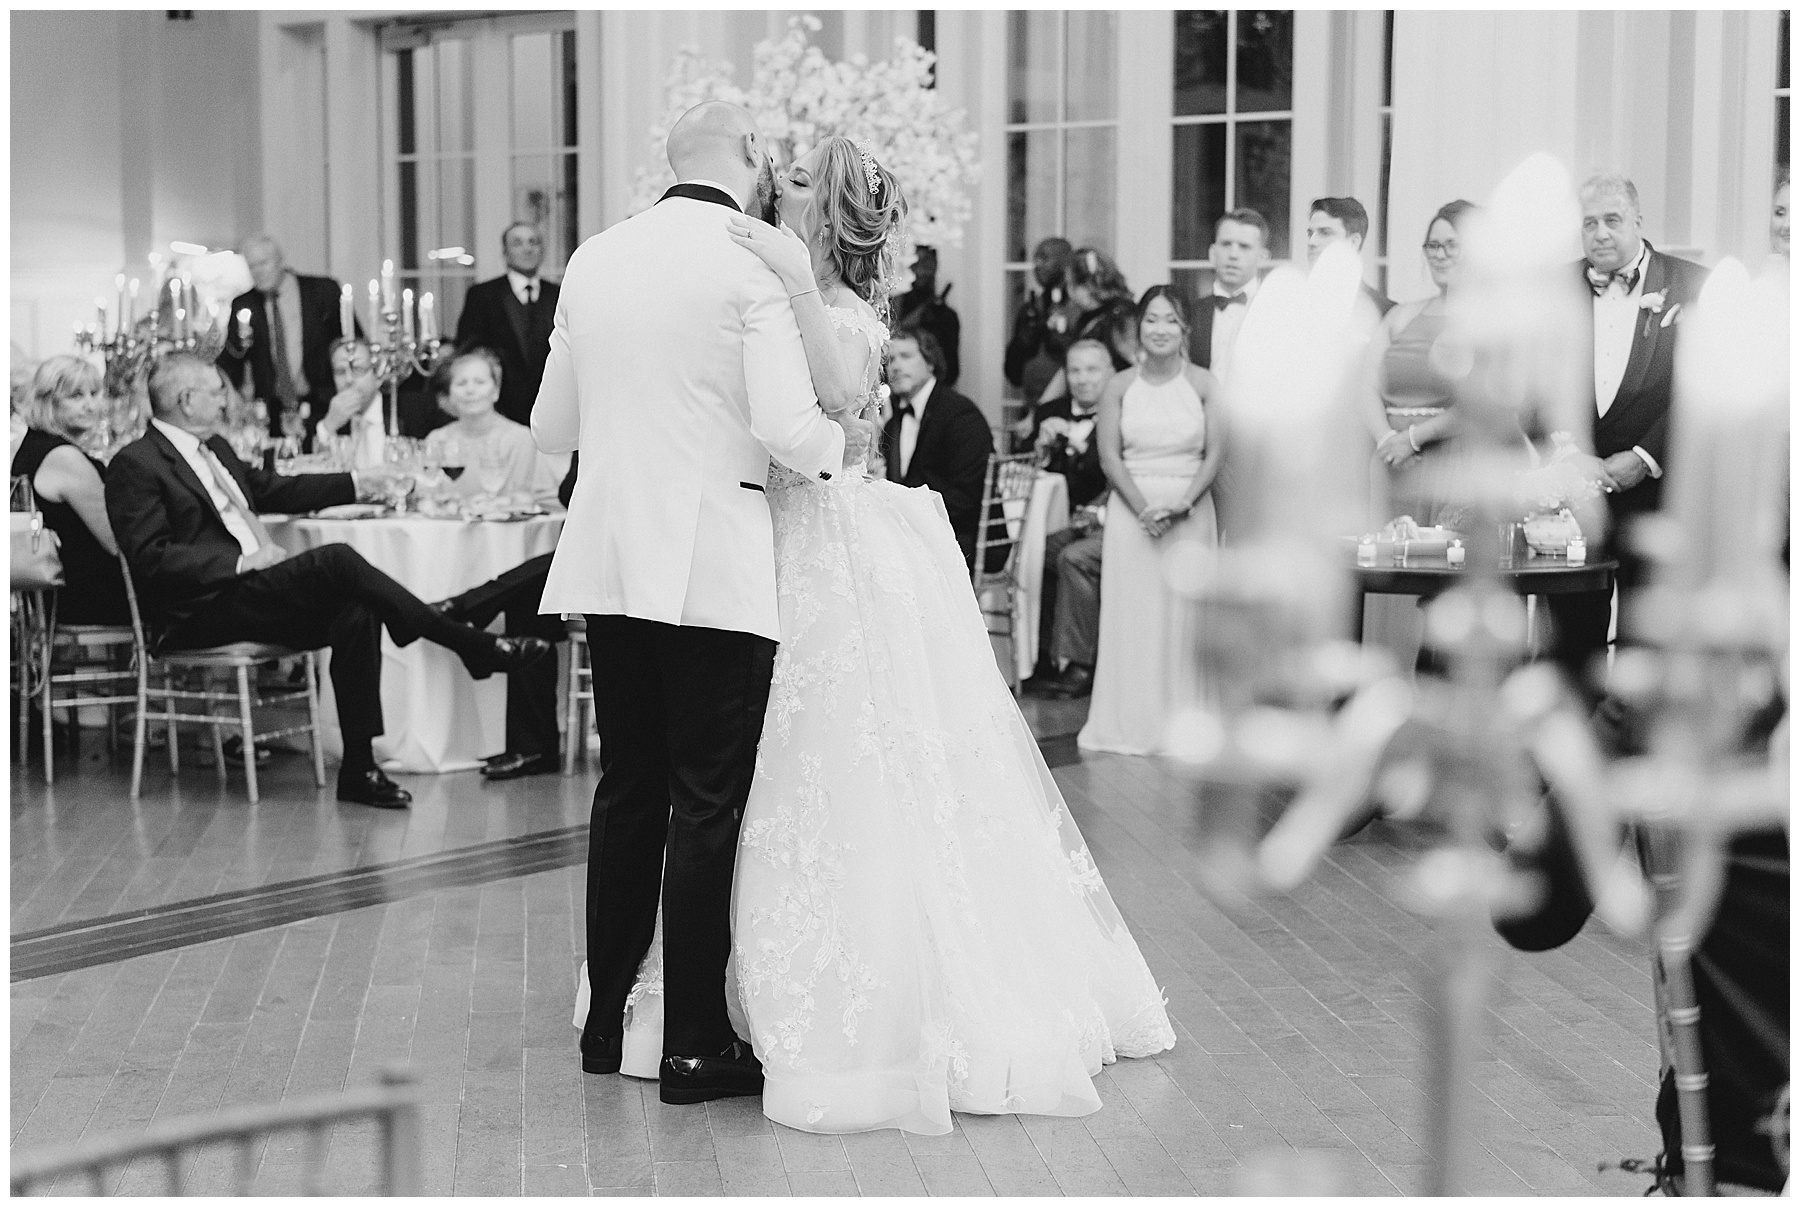 newlyweds share first dance at their Luxurious Ryland Inn Grand Ballroom Wedding reception